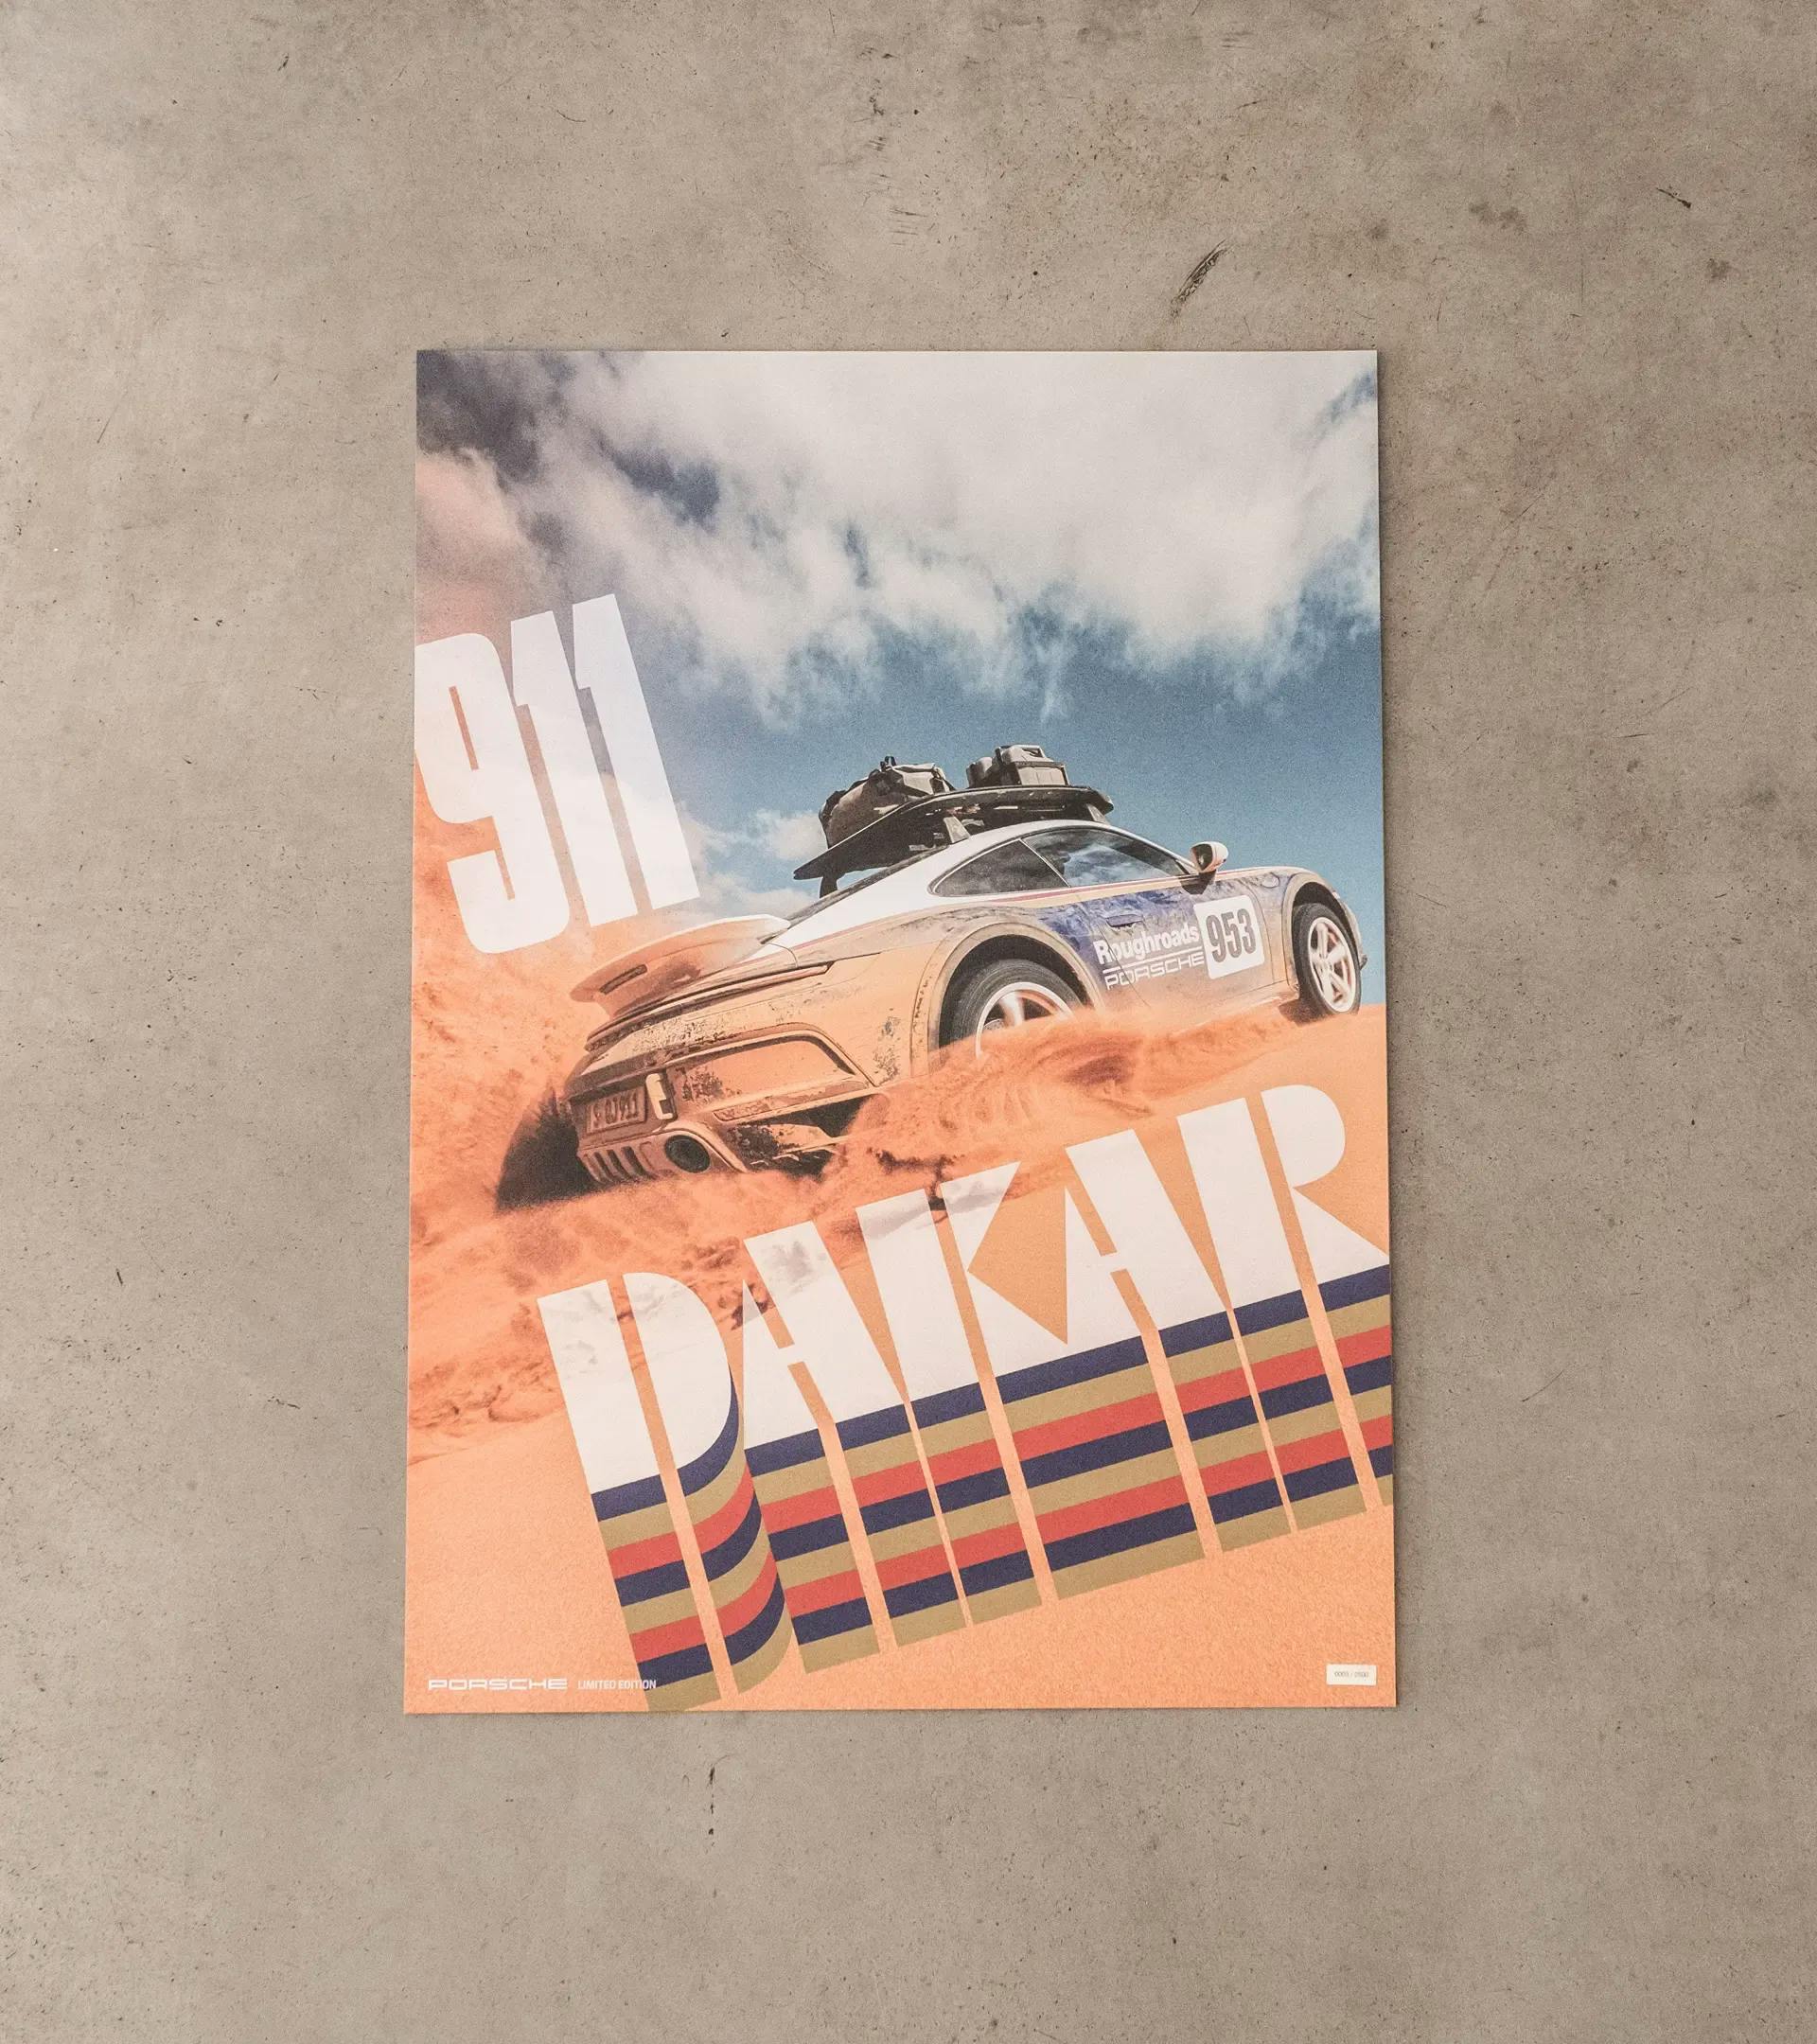 Lot d’affiches – 911 Dakar 2